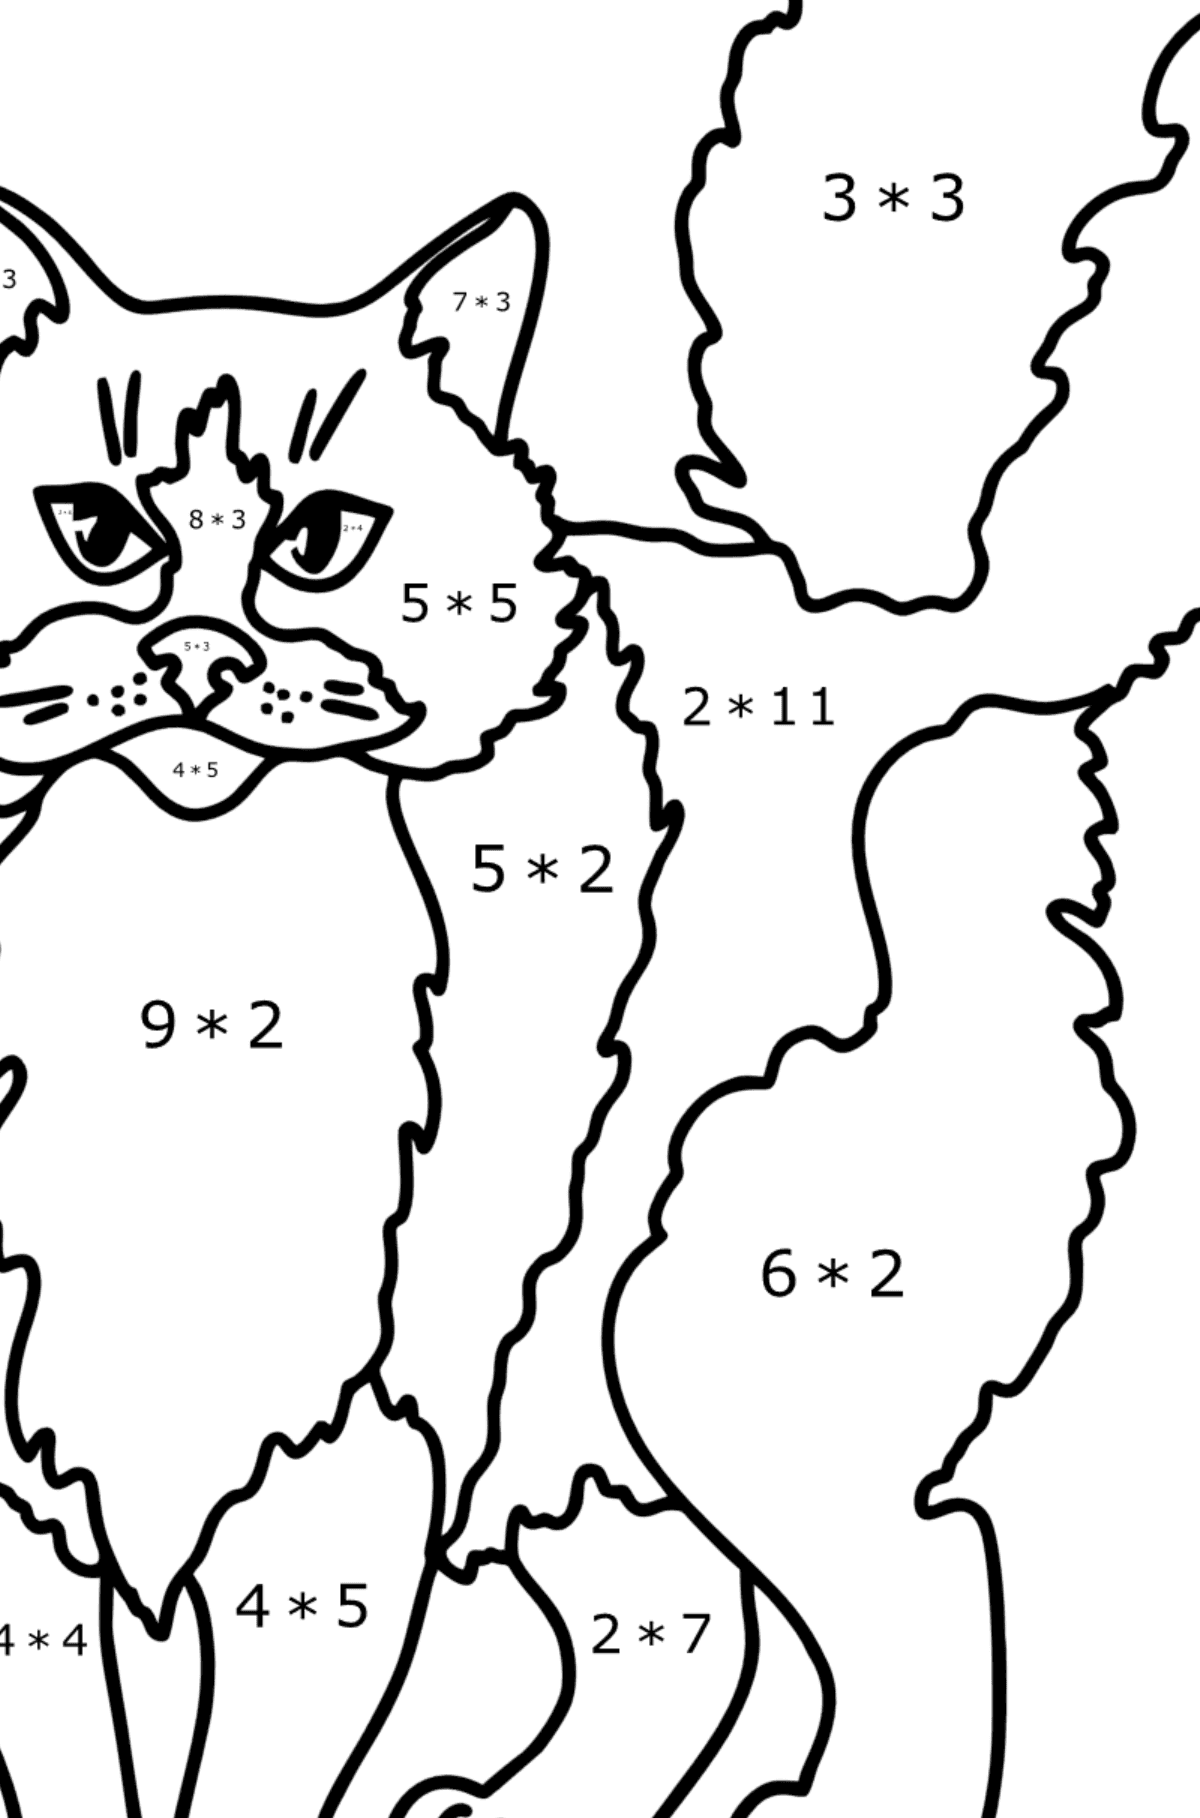 Desenho para colorir do Gato Ragdoll - Colorindo com Matemática - Multiplicação para Crianças